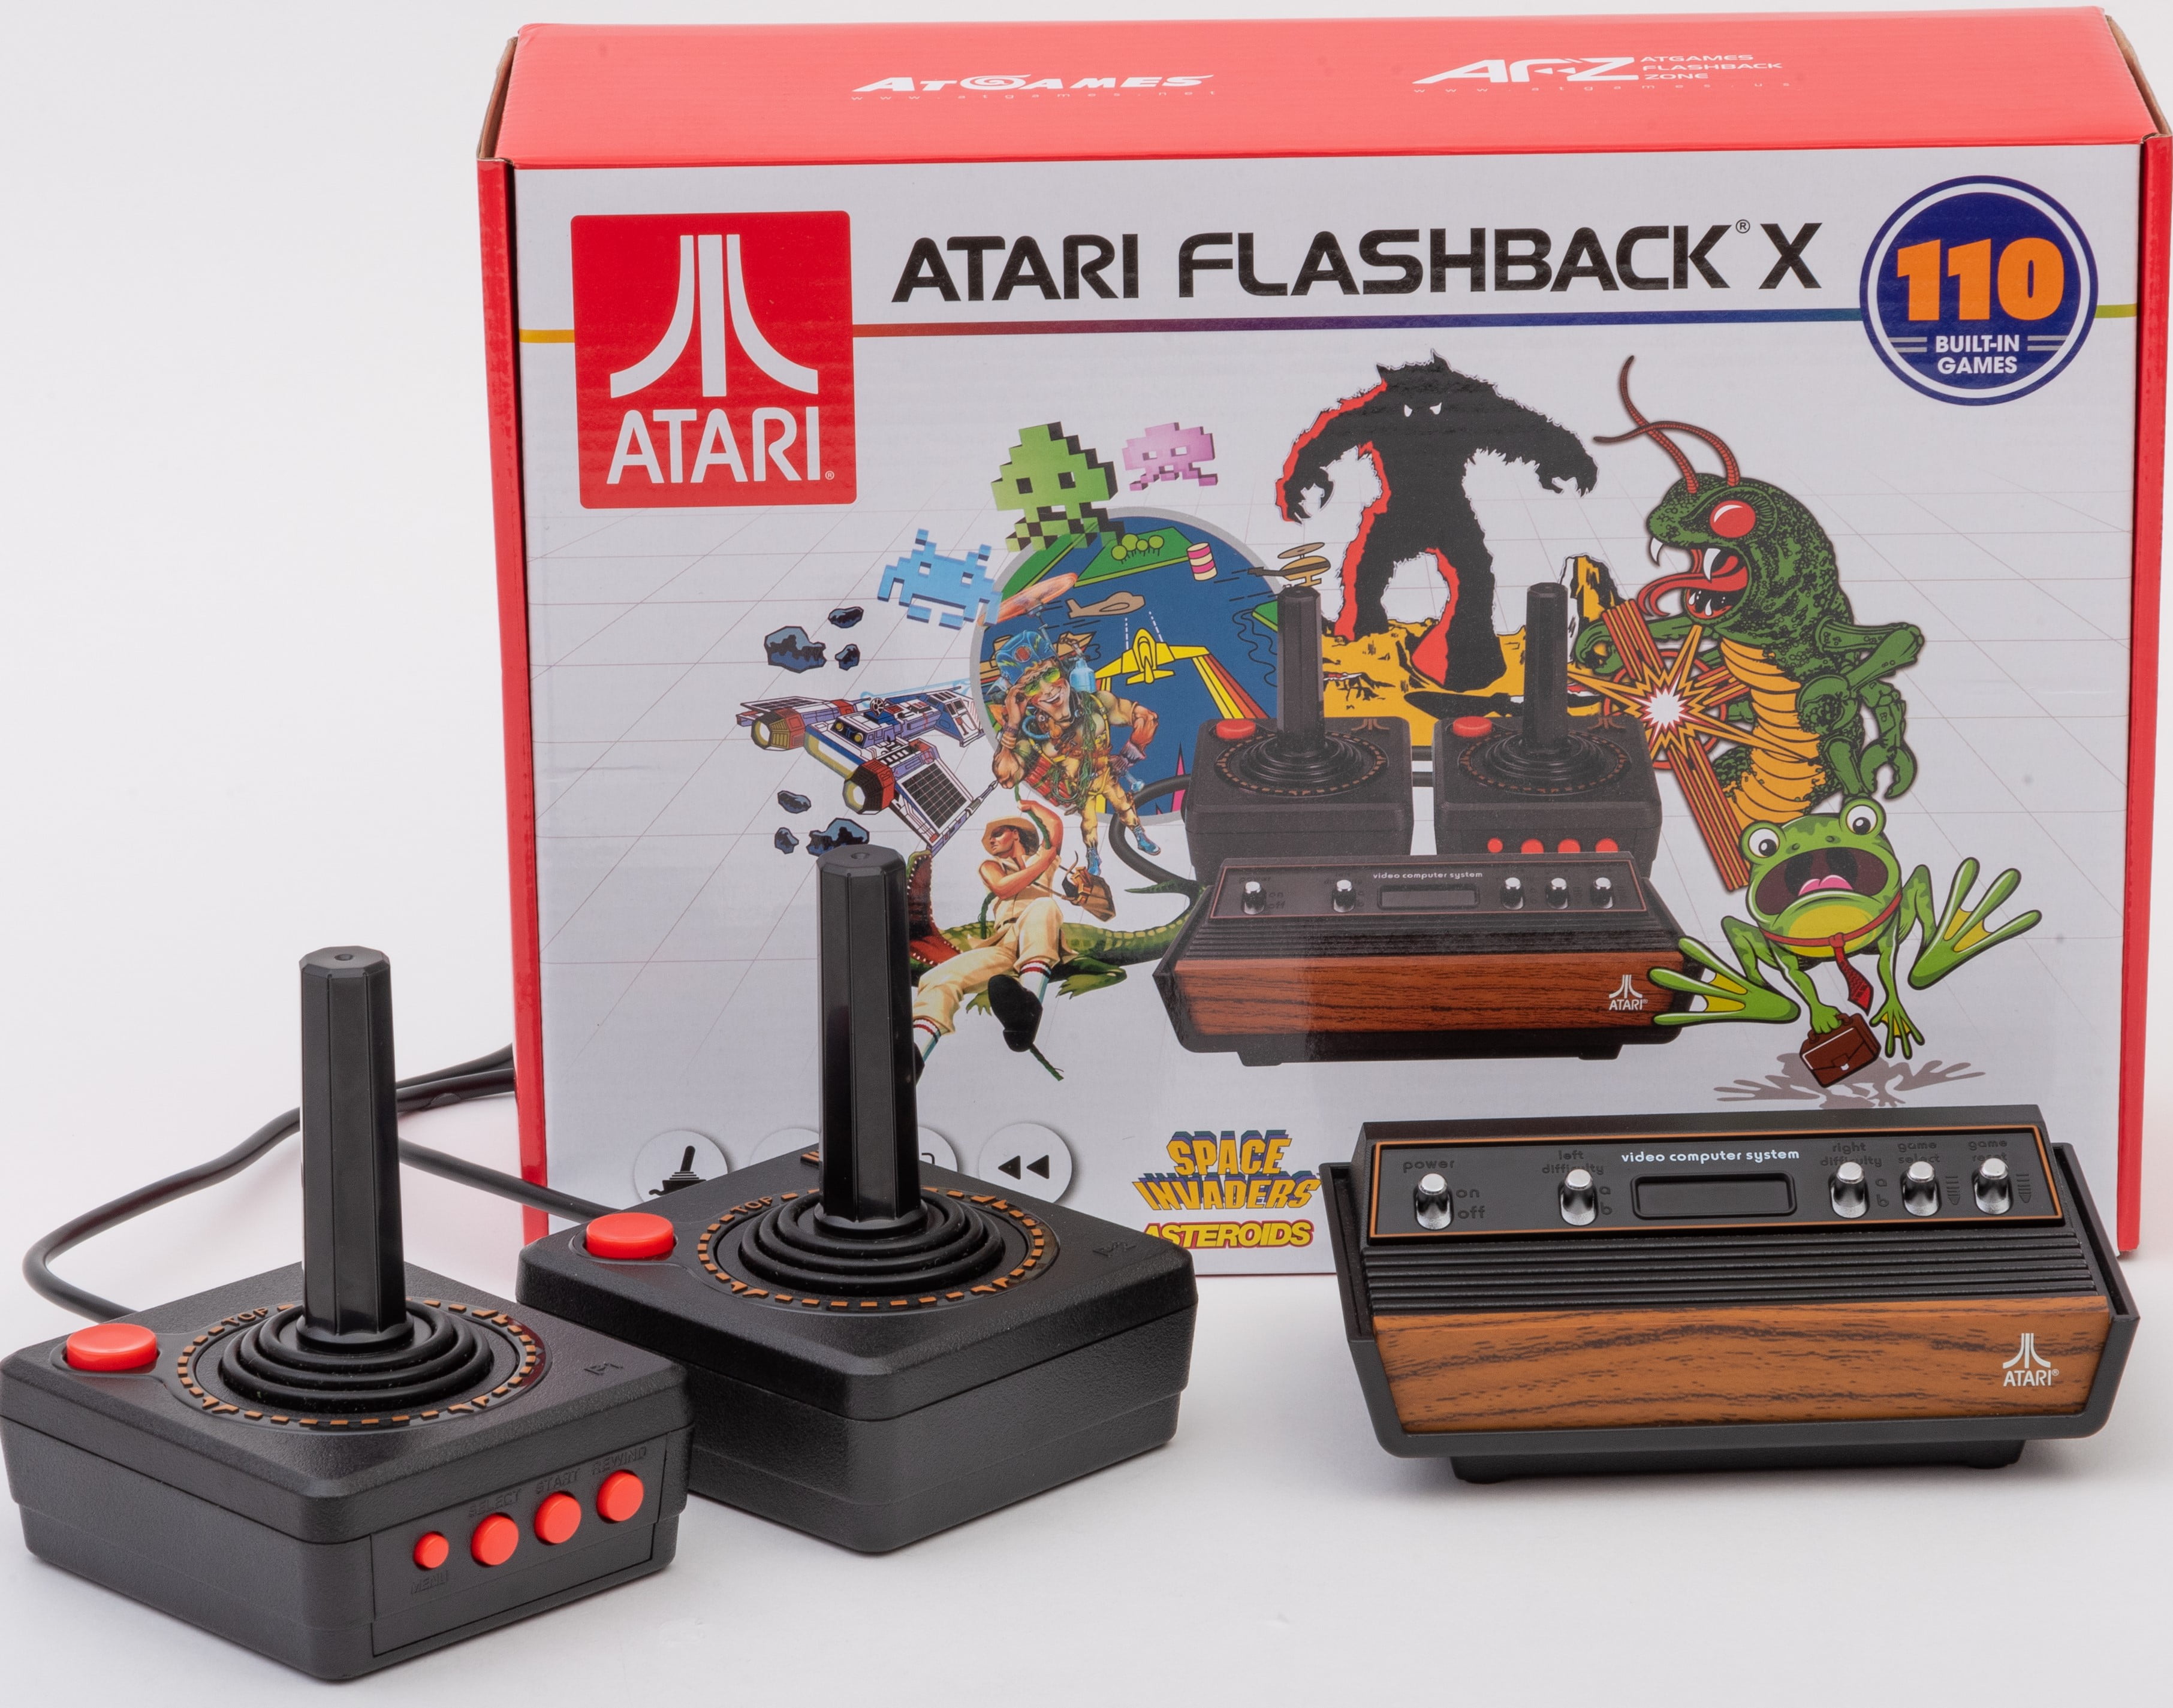 My Atari Flashback is glitching out - Atari Flashback - iFixit